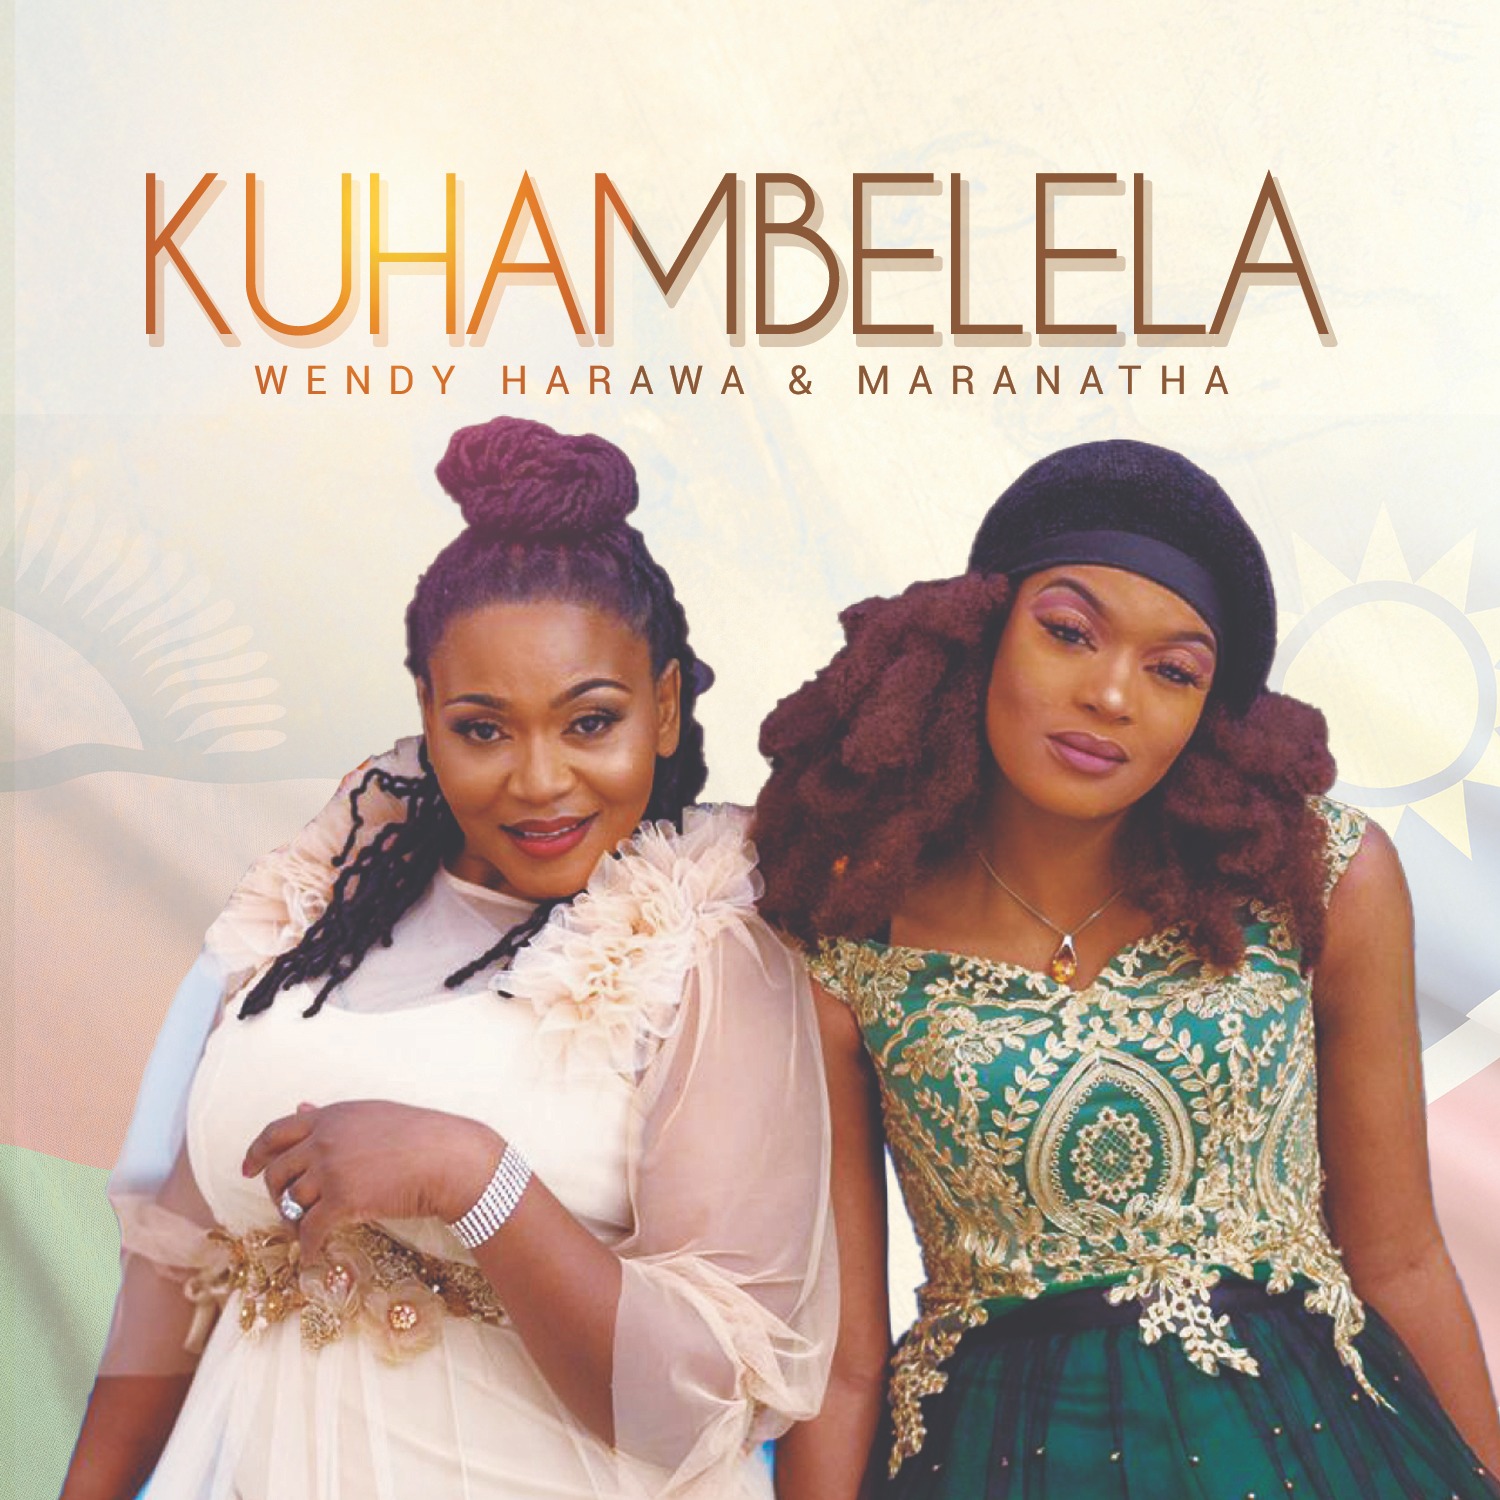  [Music Download]Wendy Harawa and Maranatha – Kuhambelela